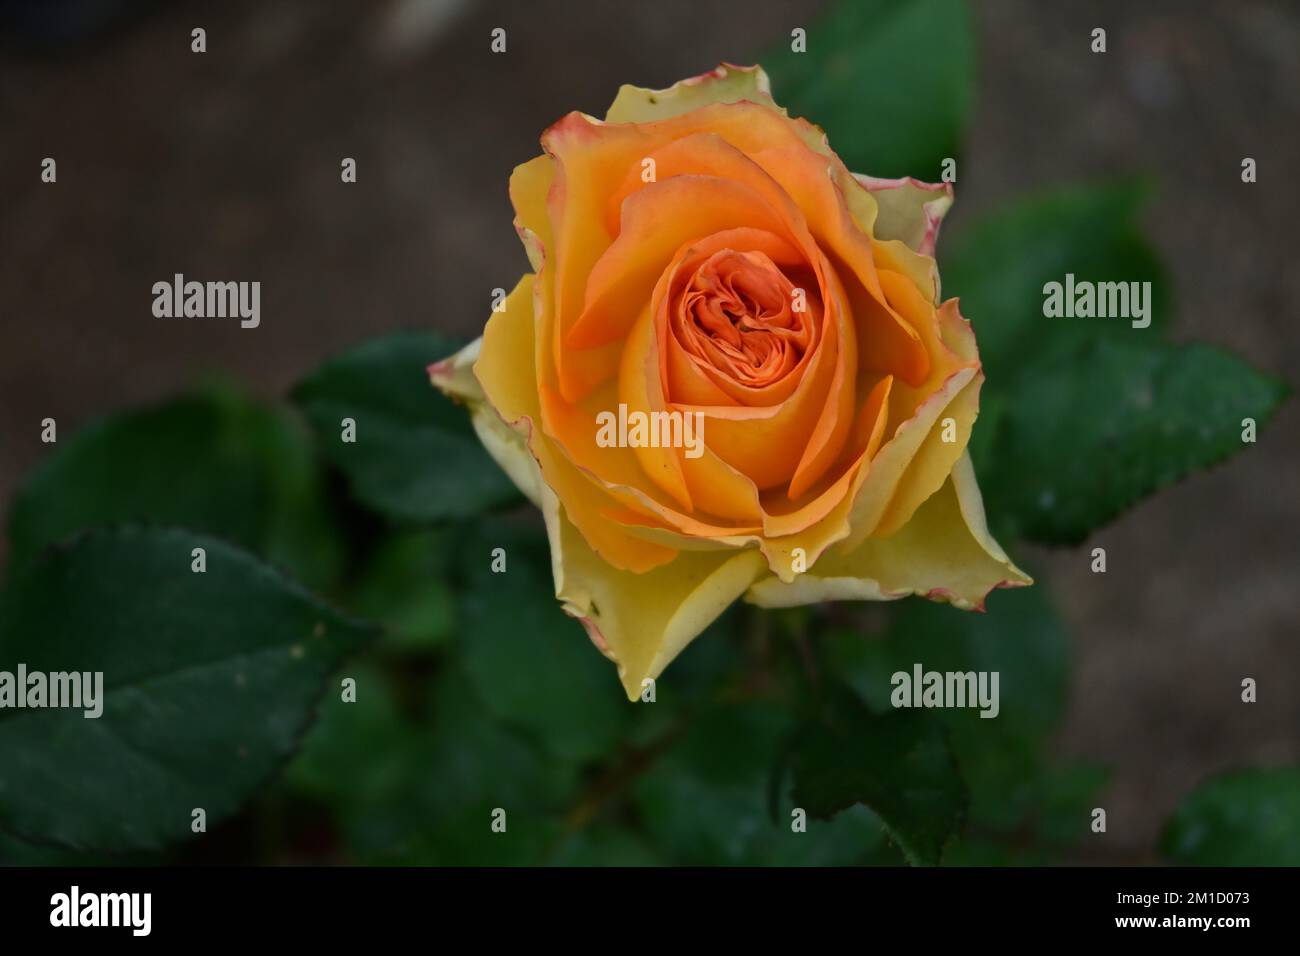 Vue en hauteur sur une fleur de rose orange dans le jardin. Le bord pétale de cette fleur de rose a été flétrisé à cause de la chaleur intense Banque D'Images